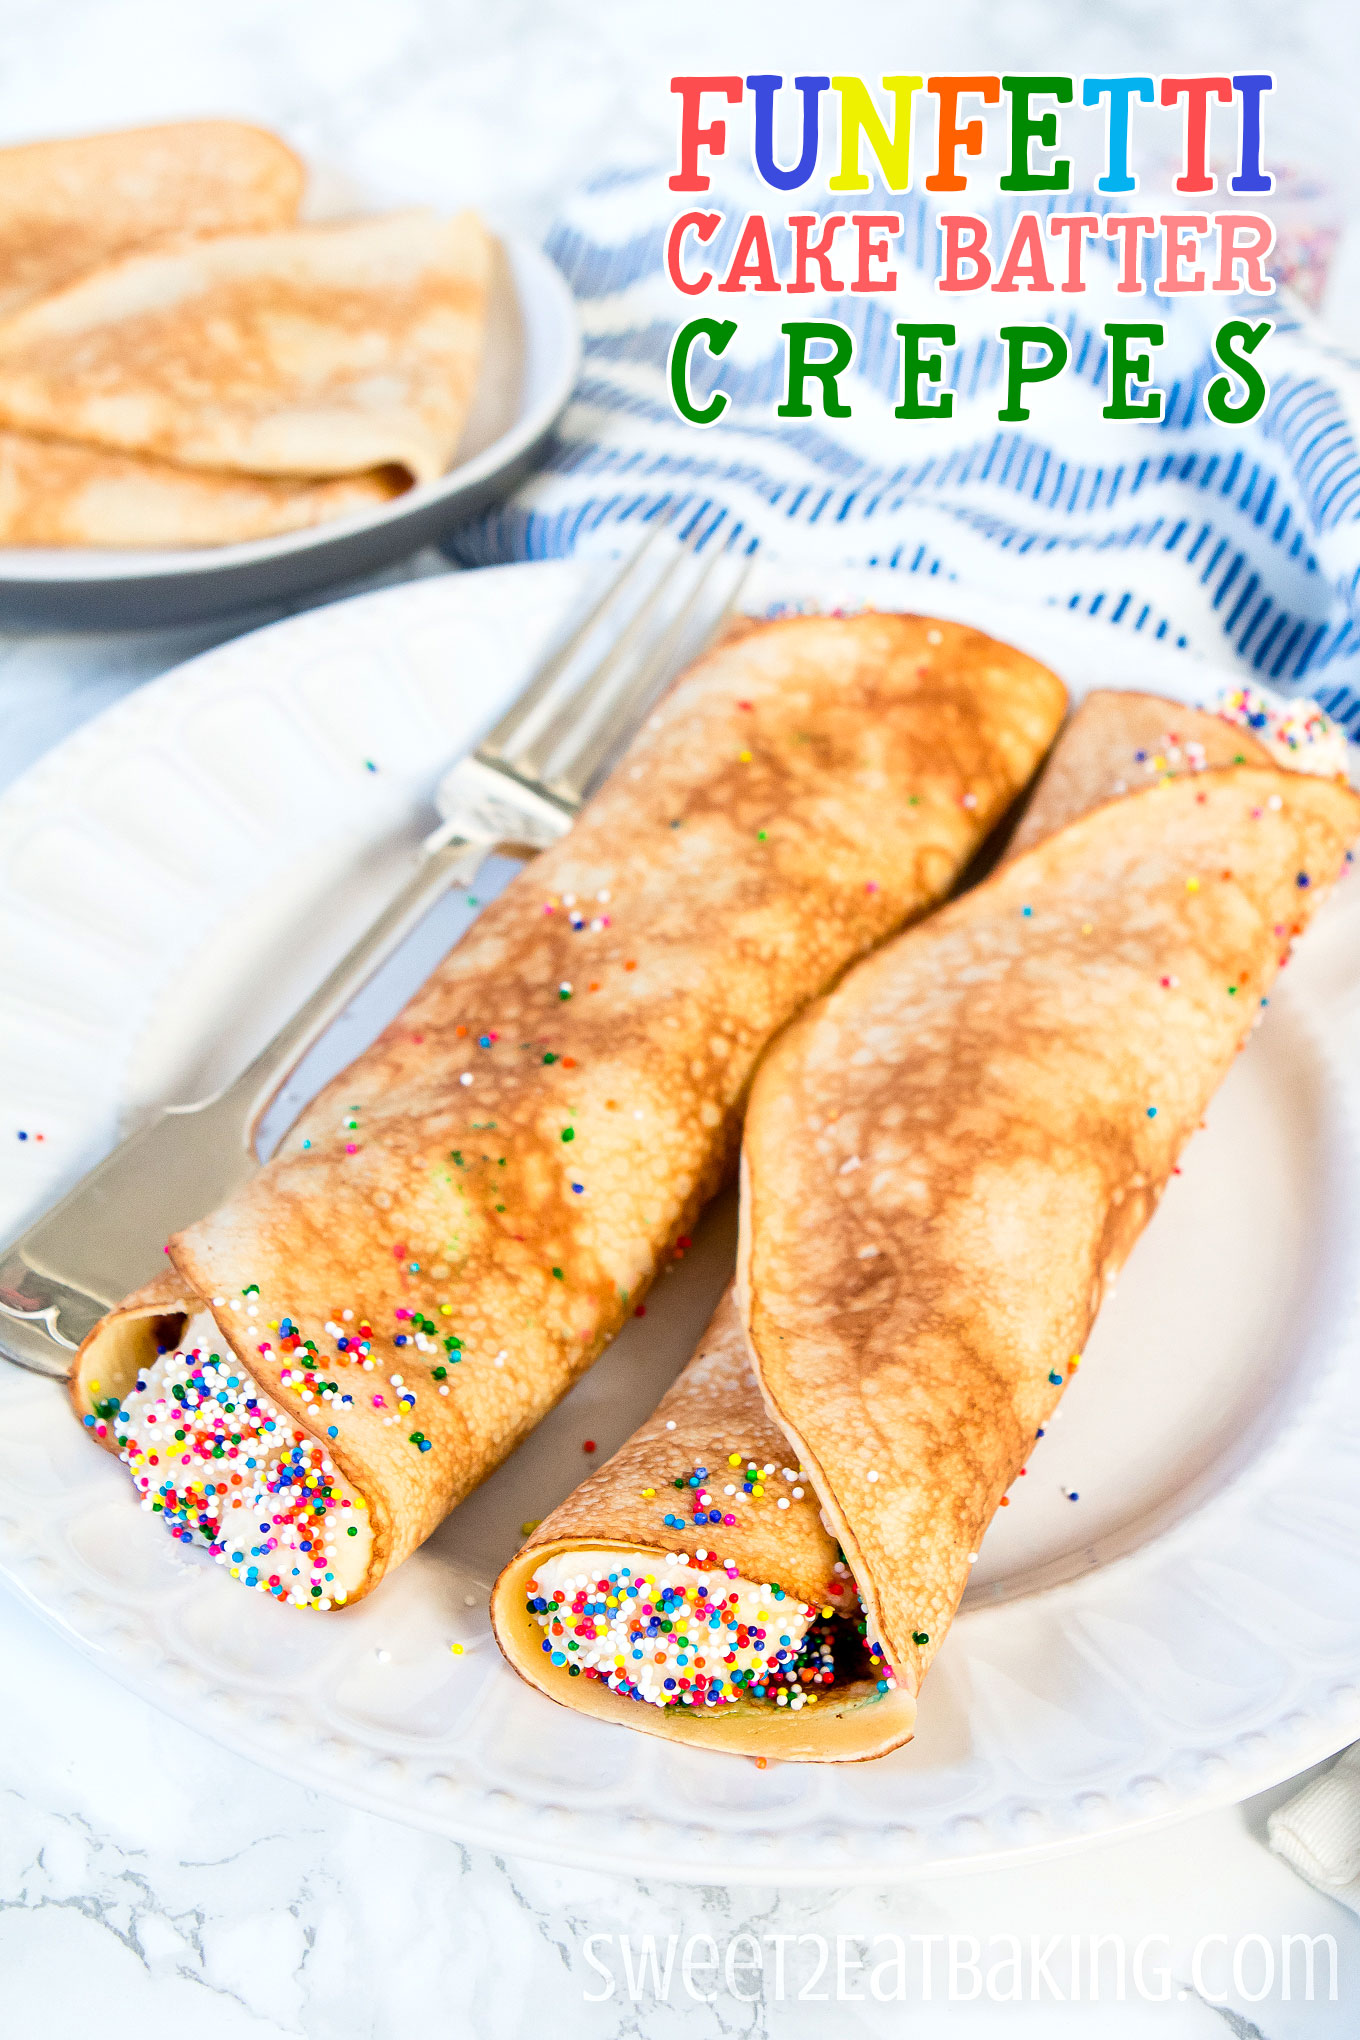 Funfetti Cake Batter Crêpes Recipe by Sweet2EatBaking.com